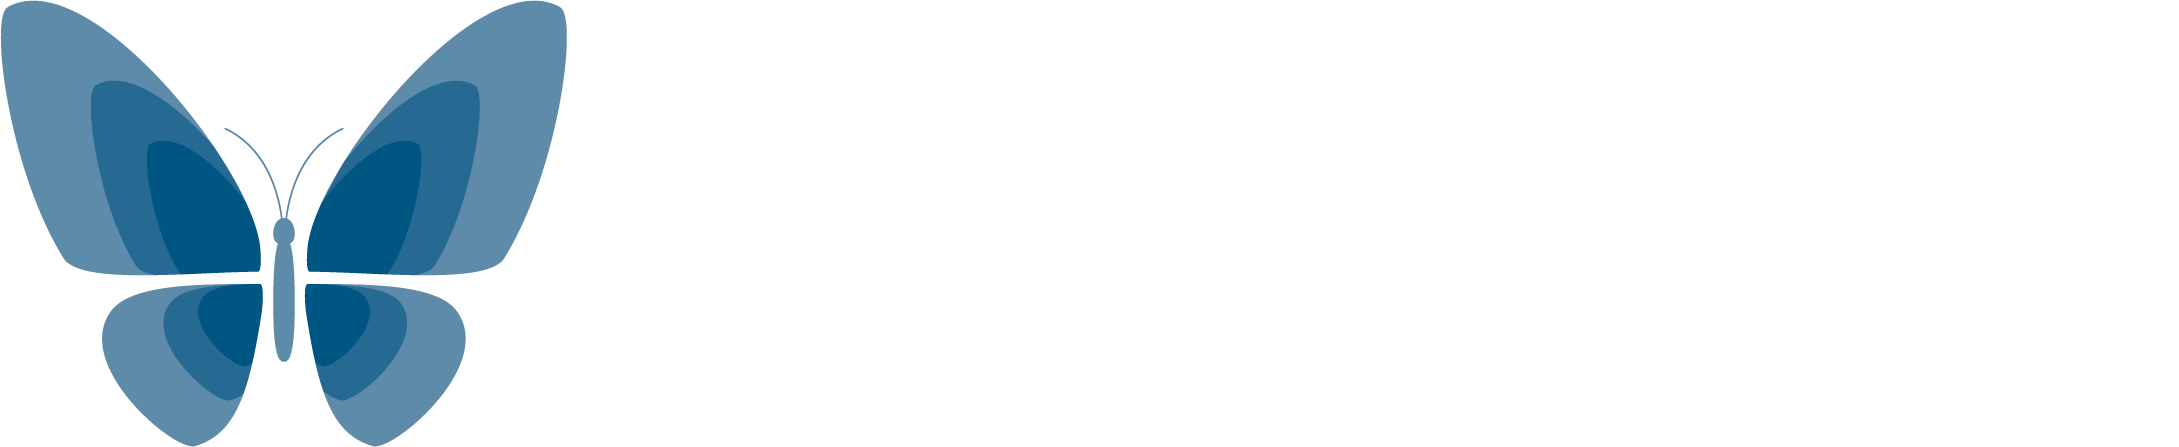 epiGenesys - A University of Sheffield Company